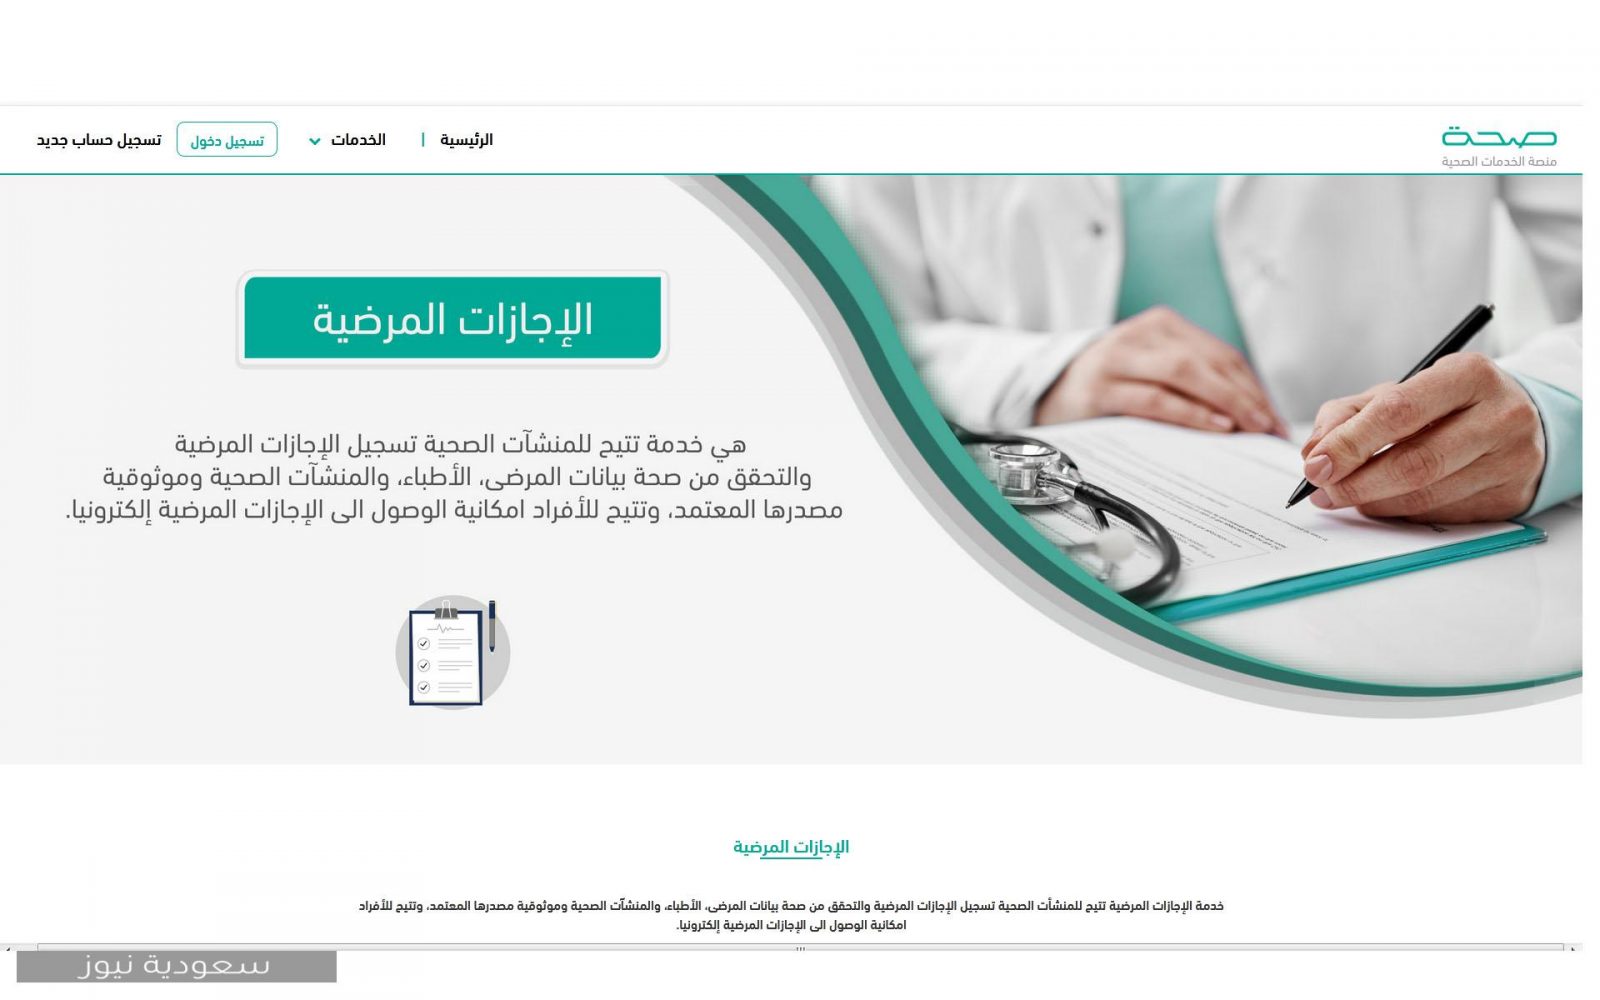 خطوات تسجيل إجازة مرضية عبر منصة صحة وطريقة الاستعلام عنها في المملكة العربية السعودية 1442